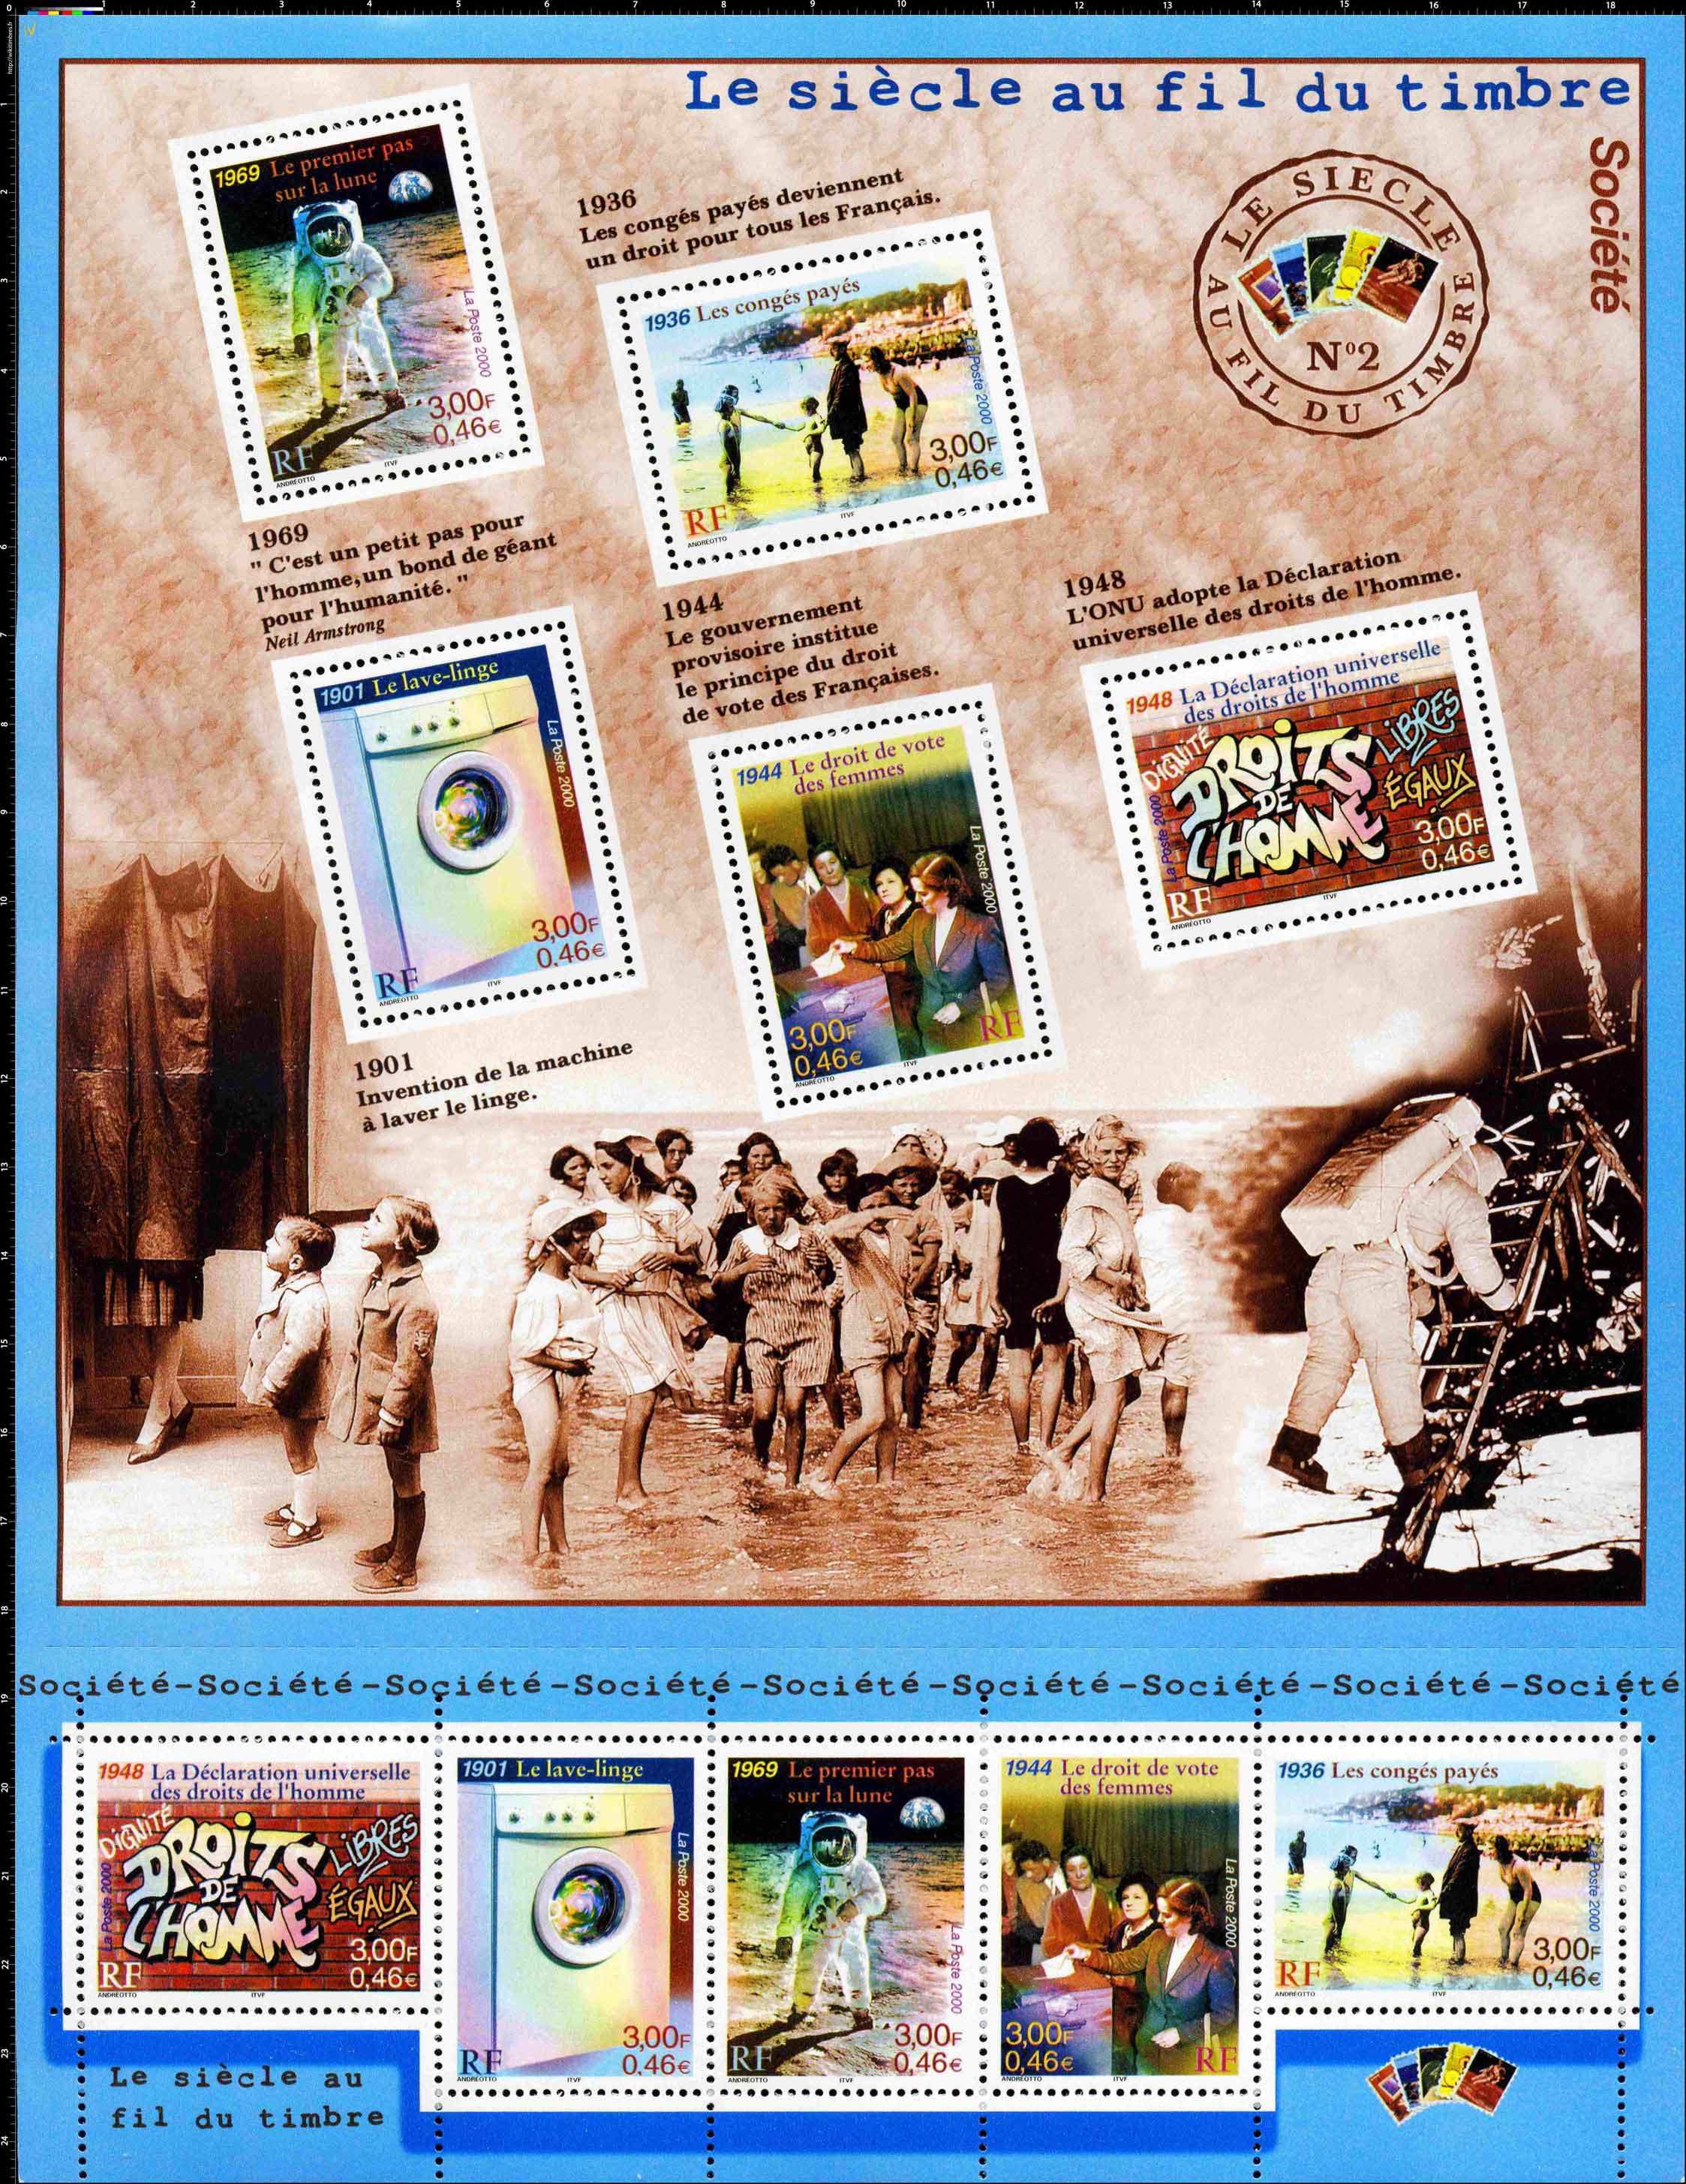 2000 Le siècle au fil du timbre n°2 (société)